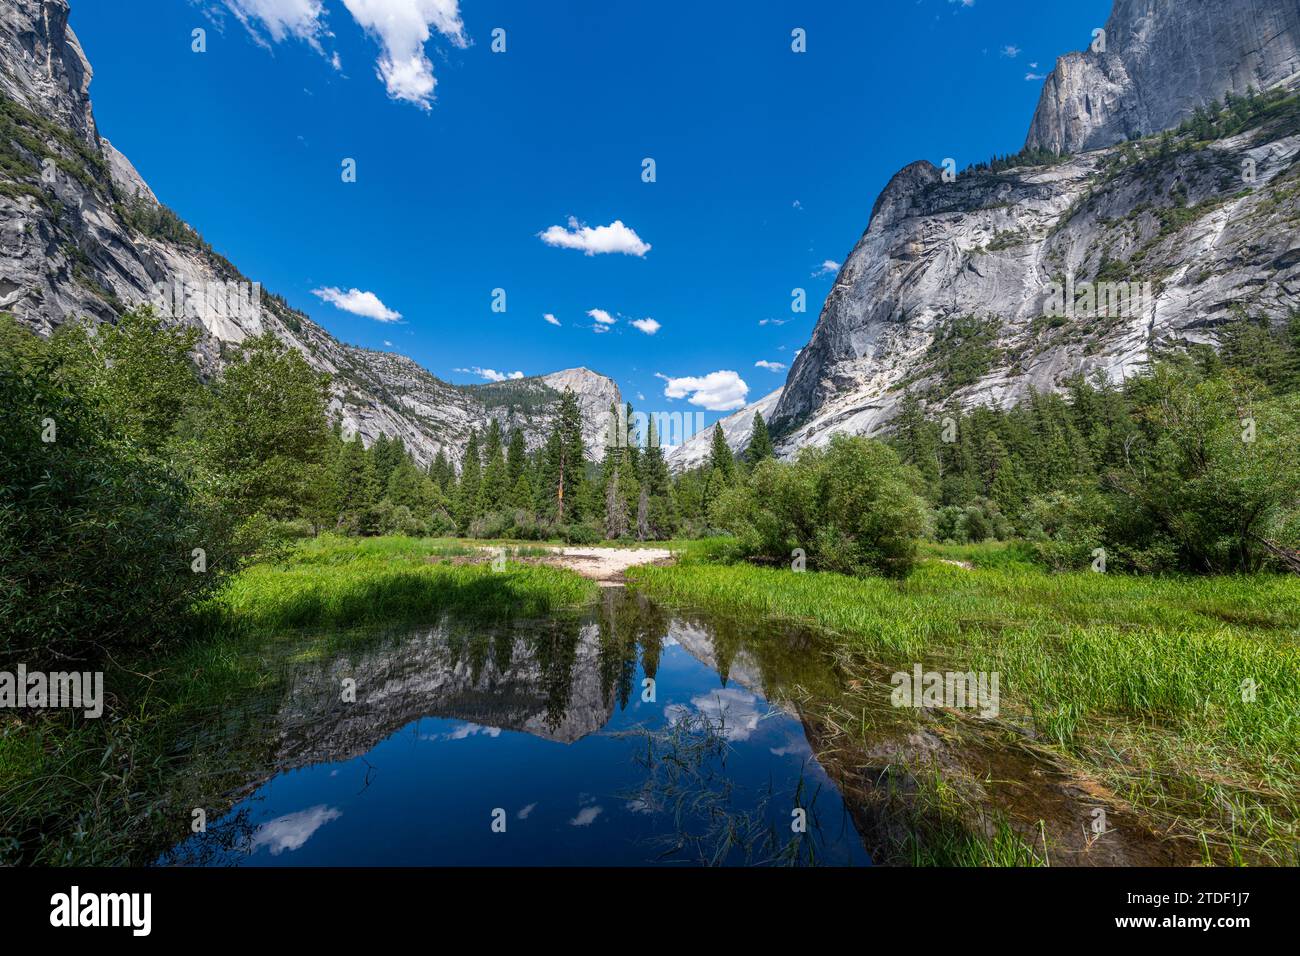 Mirror Lake dans le Canyon Tenaya, parc national Yosemite, site du patrimoine mondial de l'UNESCO, Californie, États-Unis d'Amérique, Amérique du Nord Banque D'Images